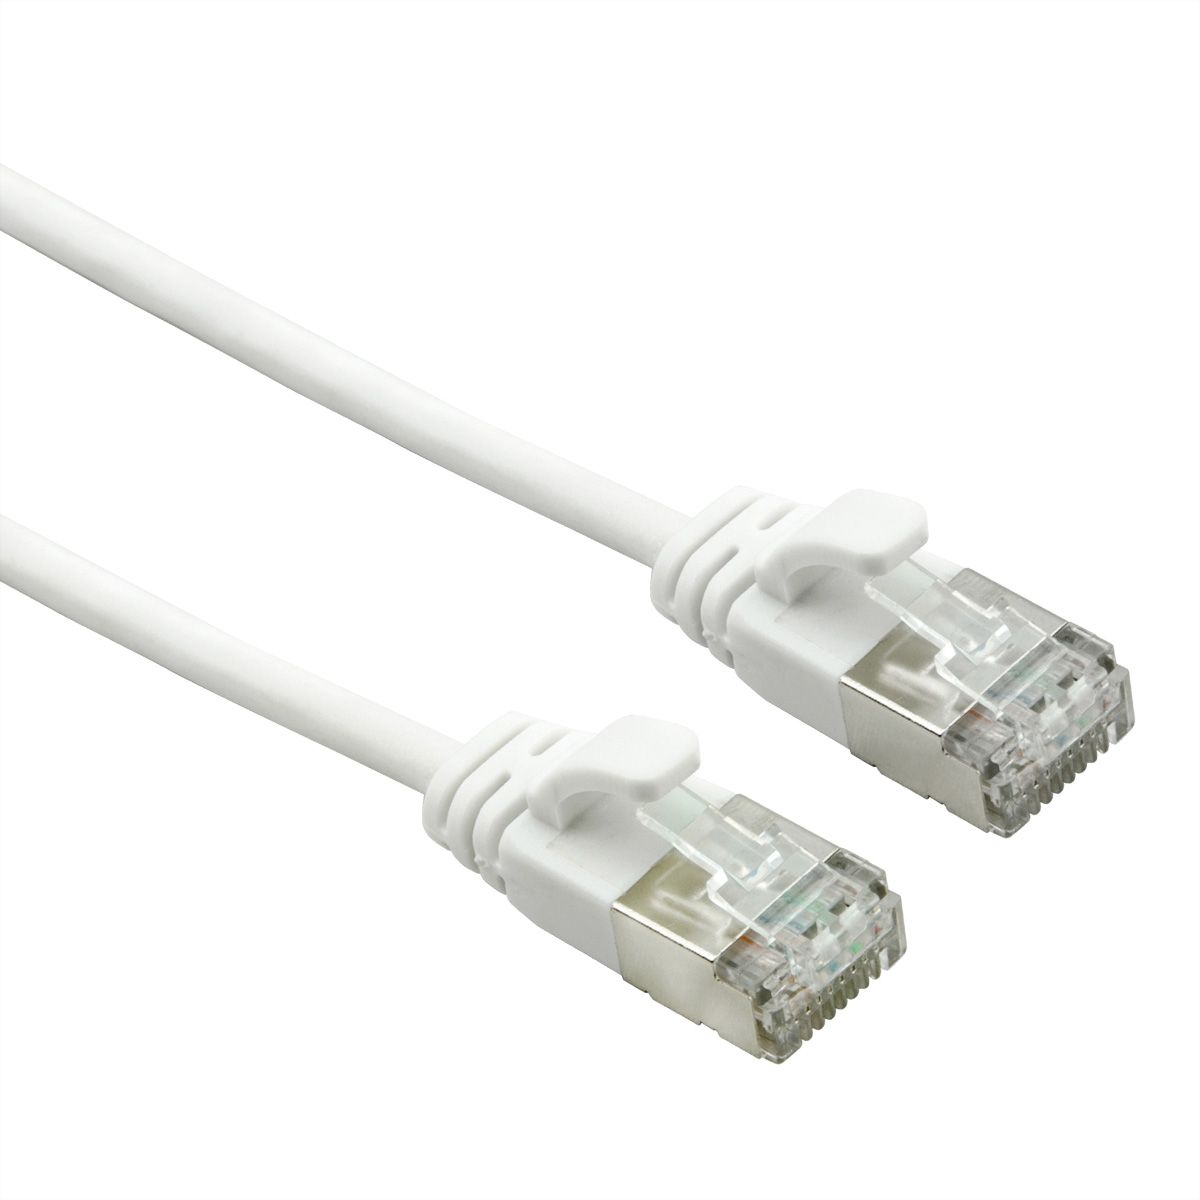 ROLINE Câble Data Center U/FTP Cat.7, avec connecteurs RJ45, 500 MHz  (Classe EA), LSOH, slim, blanc, 2 m - SECOMP France